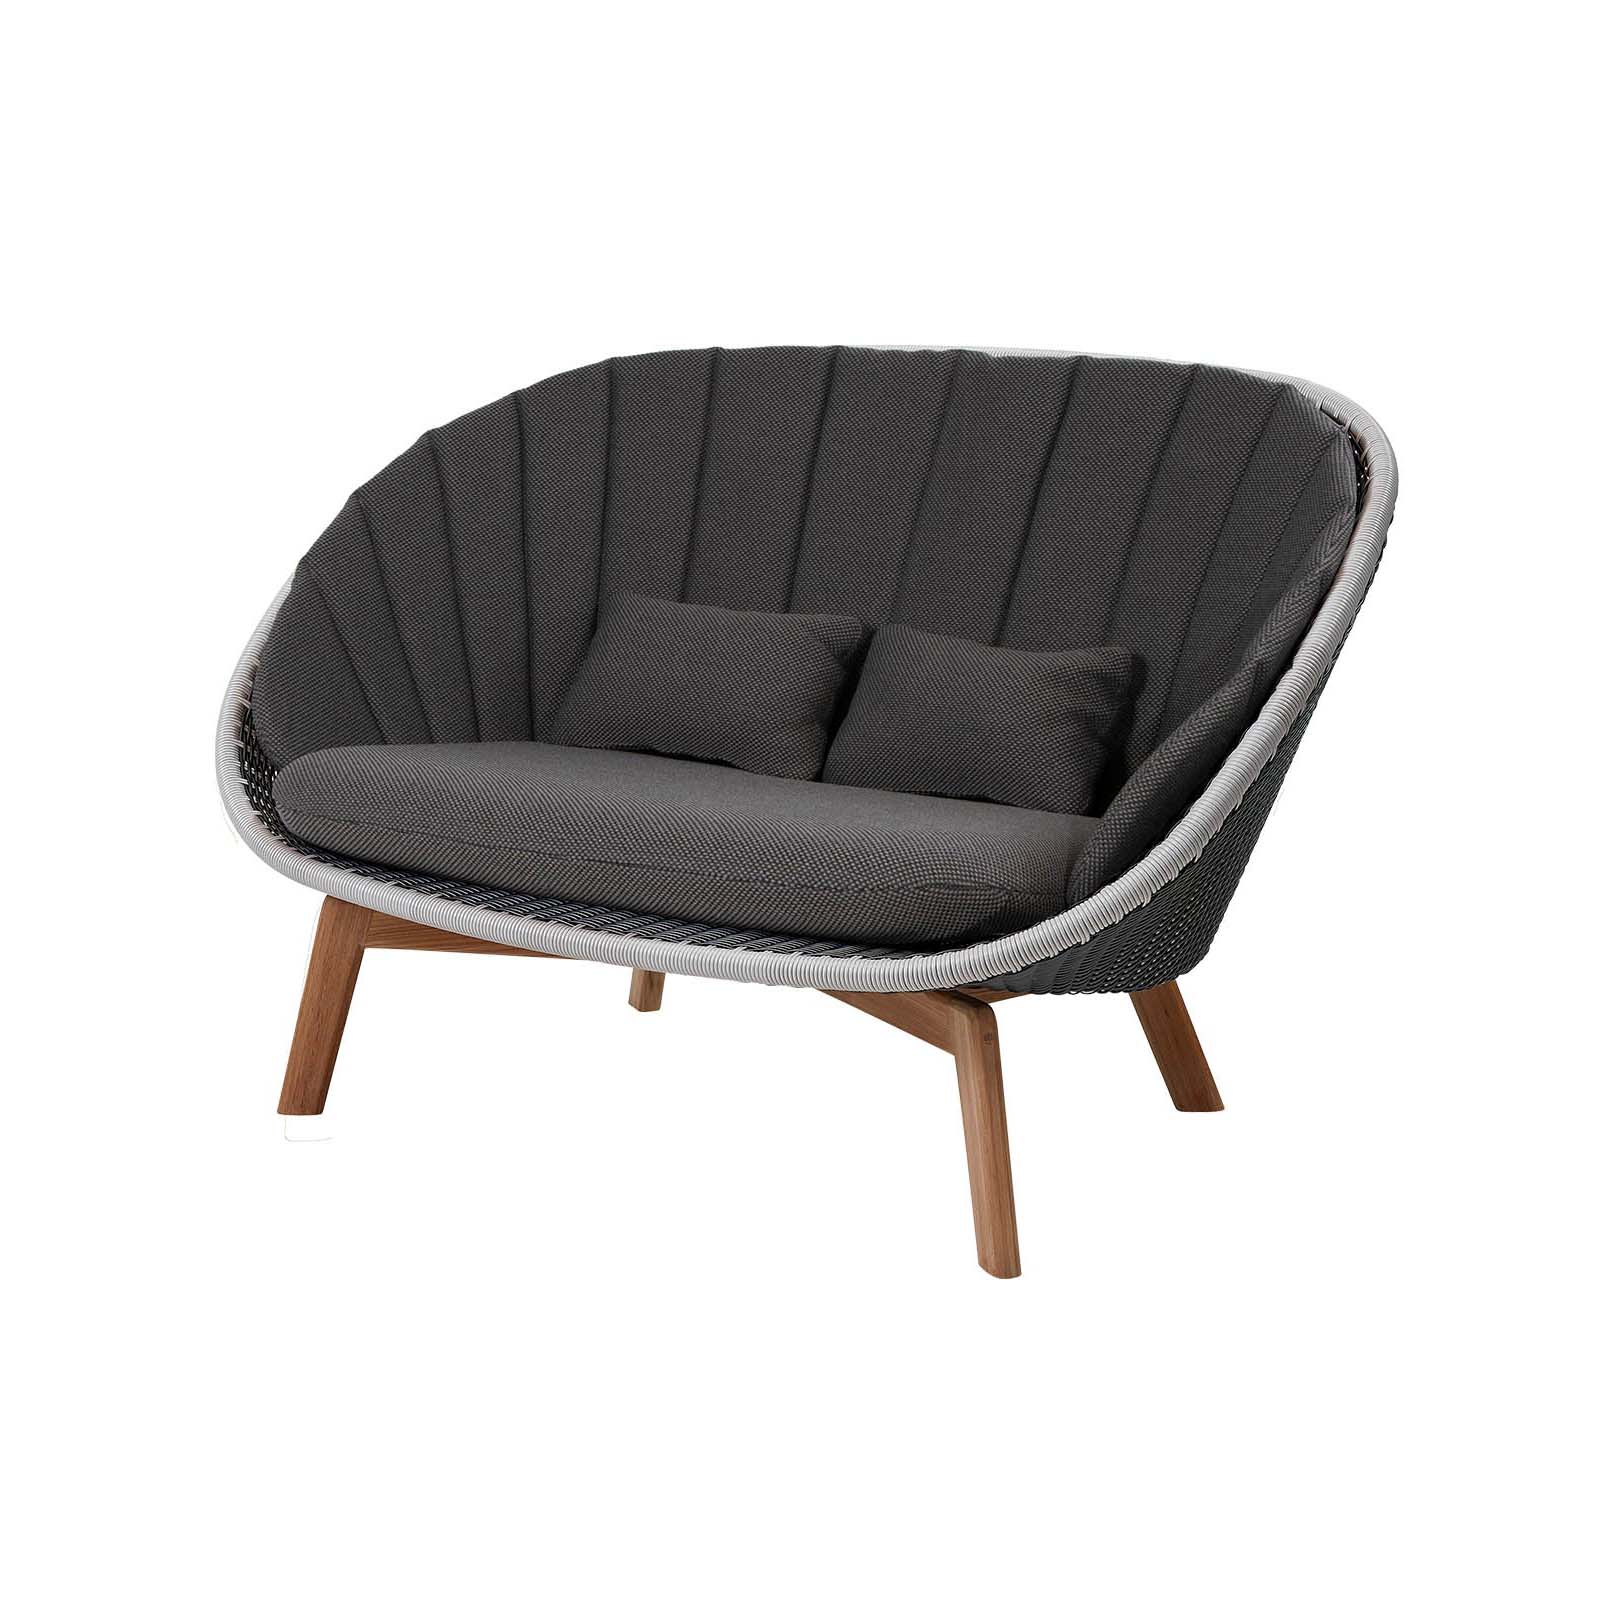 Peacock 2-Sitzer Sofa aus Cane-line Weave in Light Grey mit Kissen aus Cane-line Focus in Dark Grey